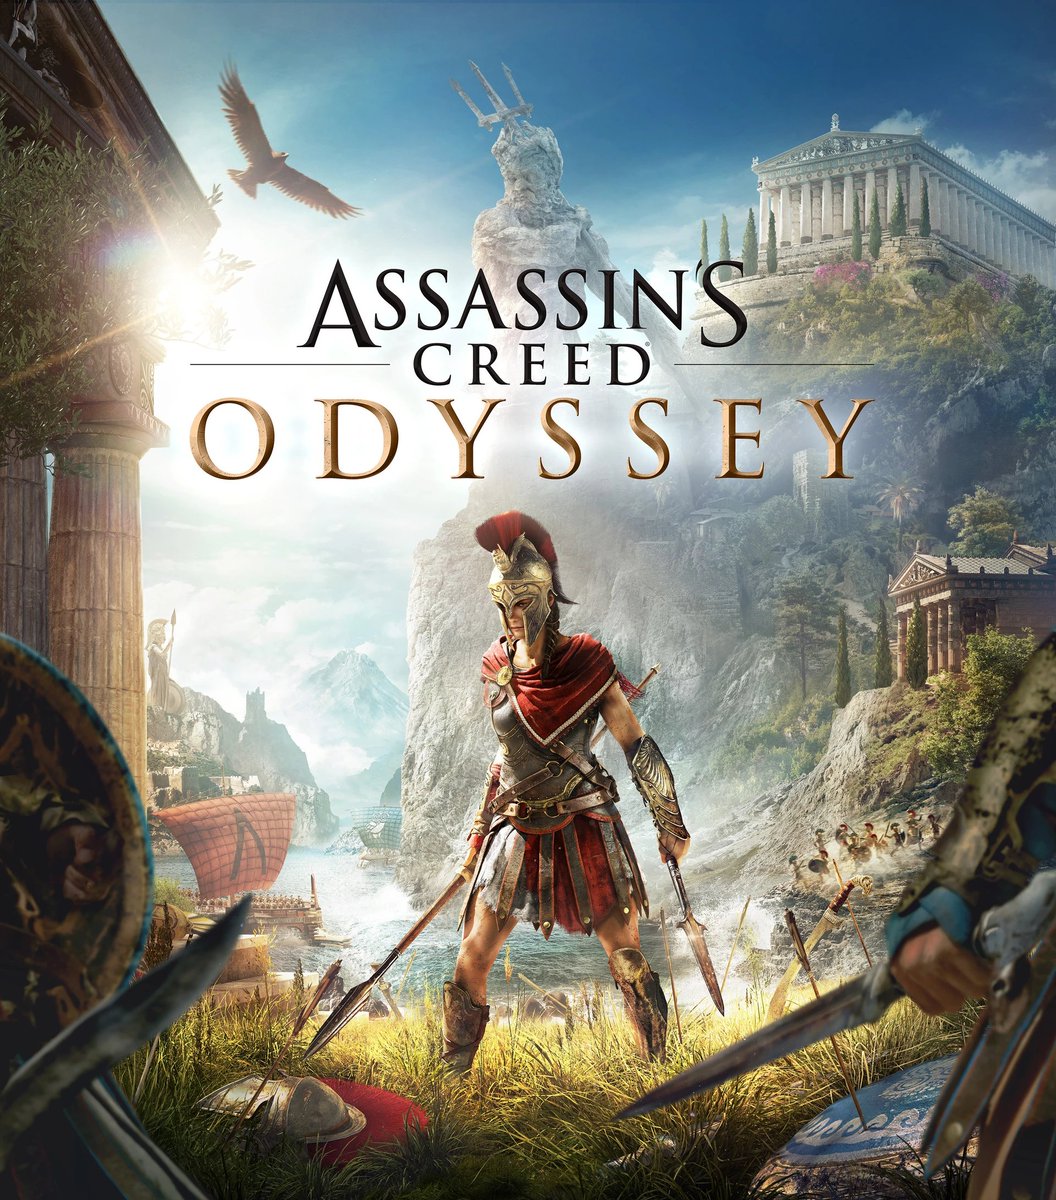 🚨 Assassin's Creed Odyssey'in fiyatı Epic Games Store'da %85 indirimle birlikte 149,85 TL'ye düştü.